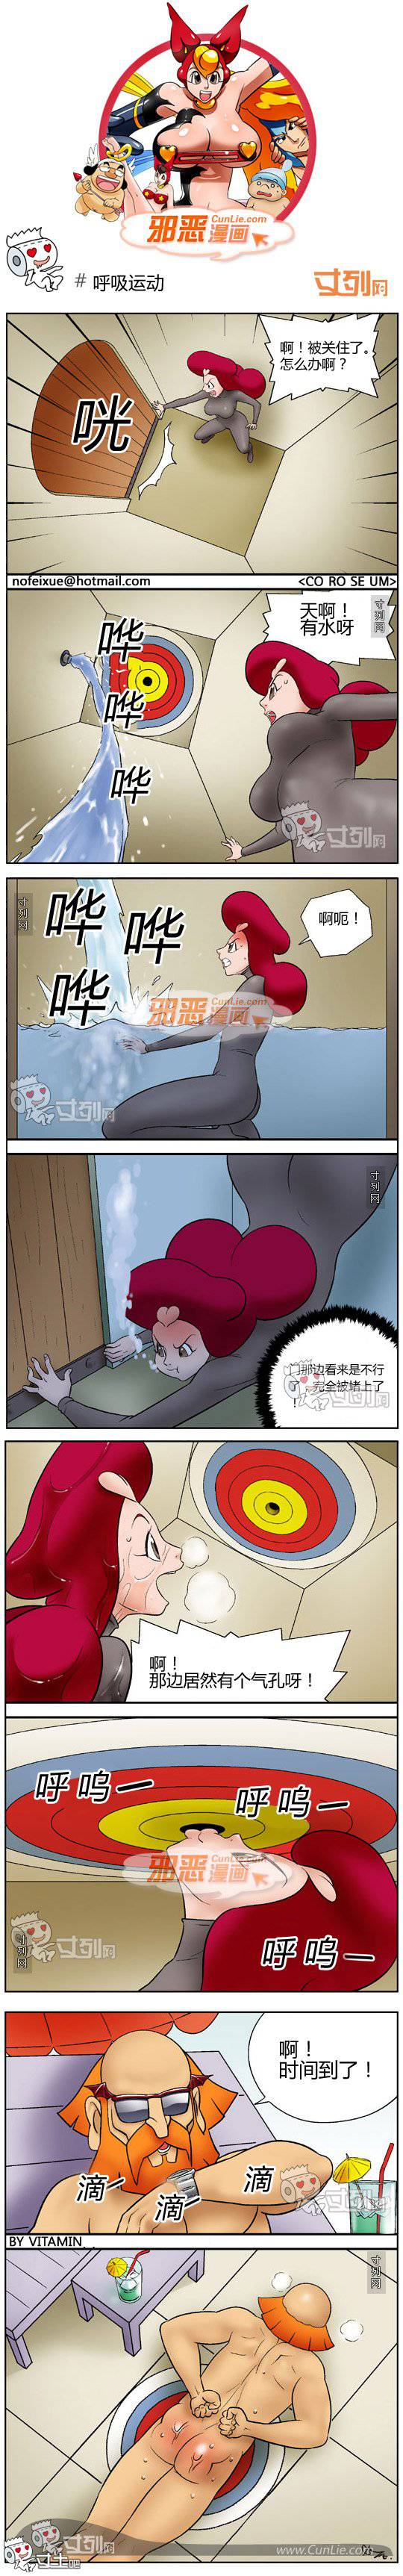 邪恶漫画爆笑囧图第206刊：呼吸运动